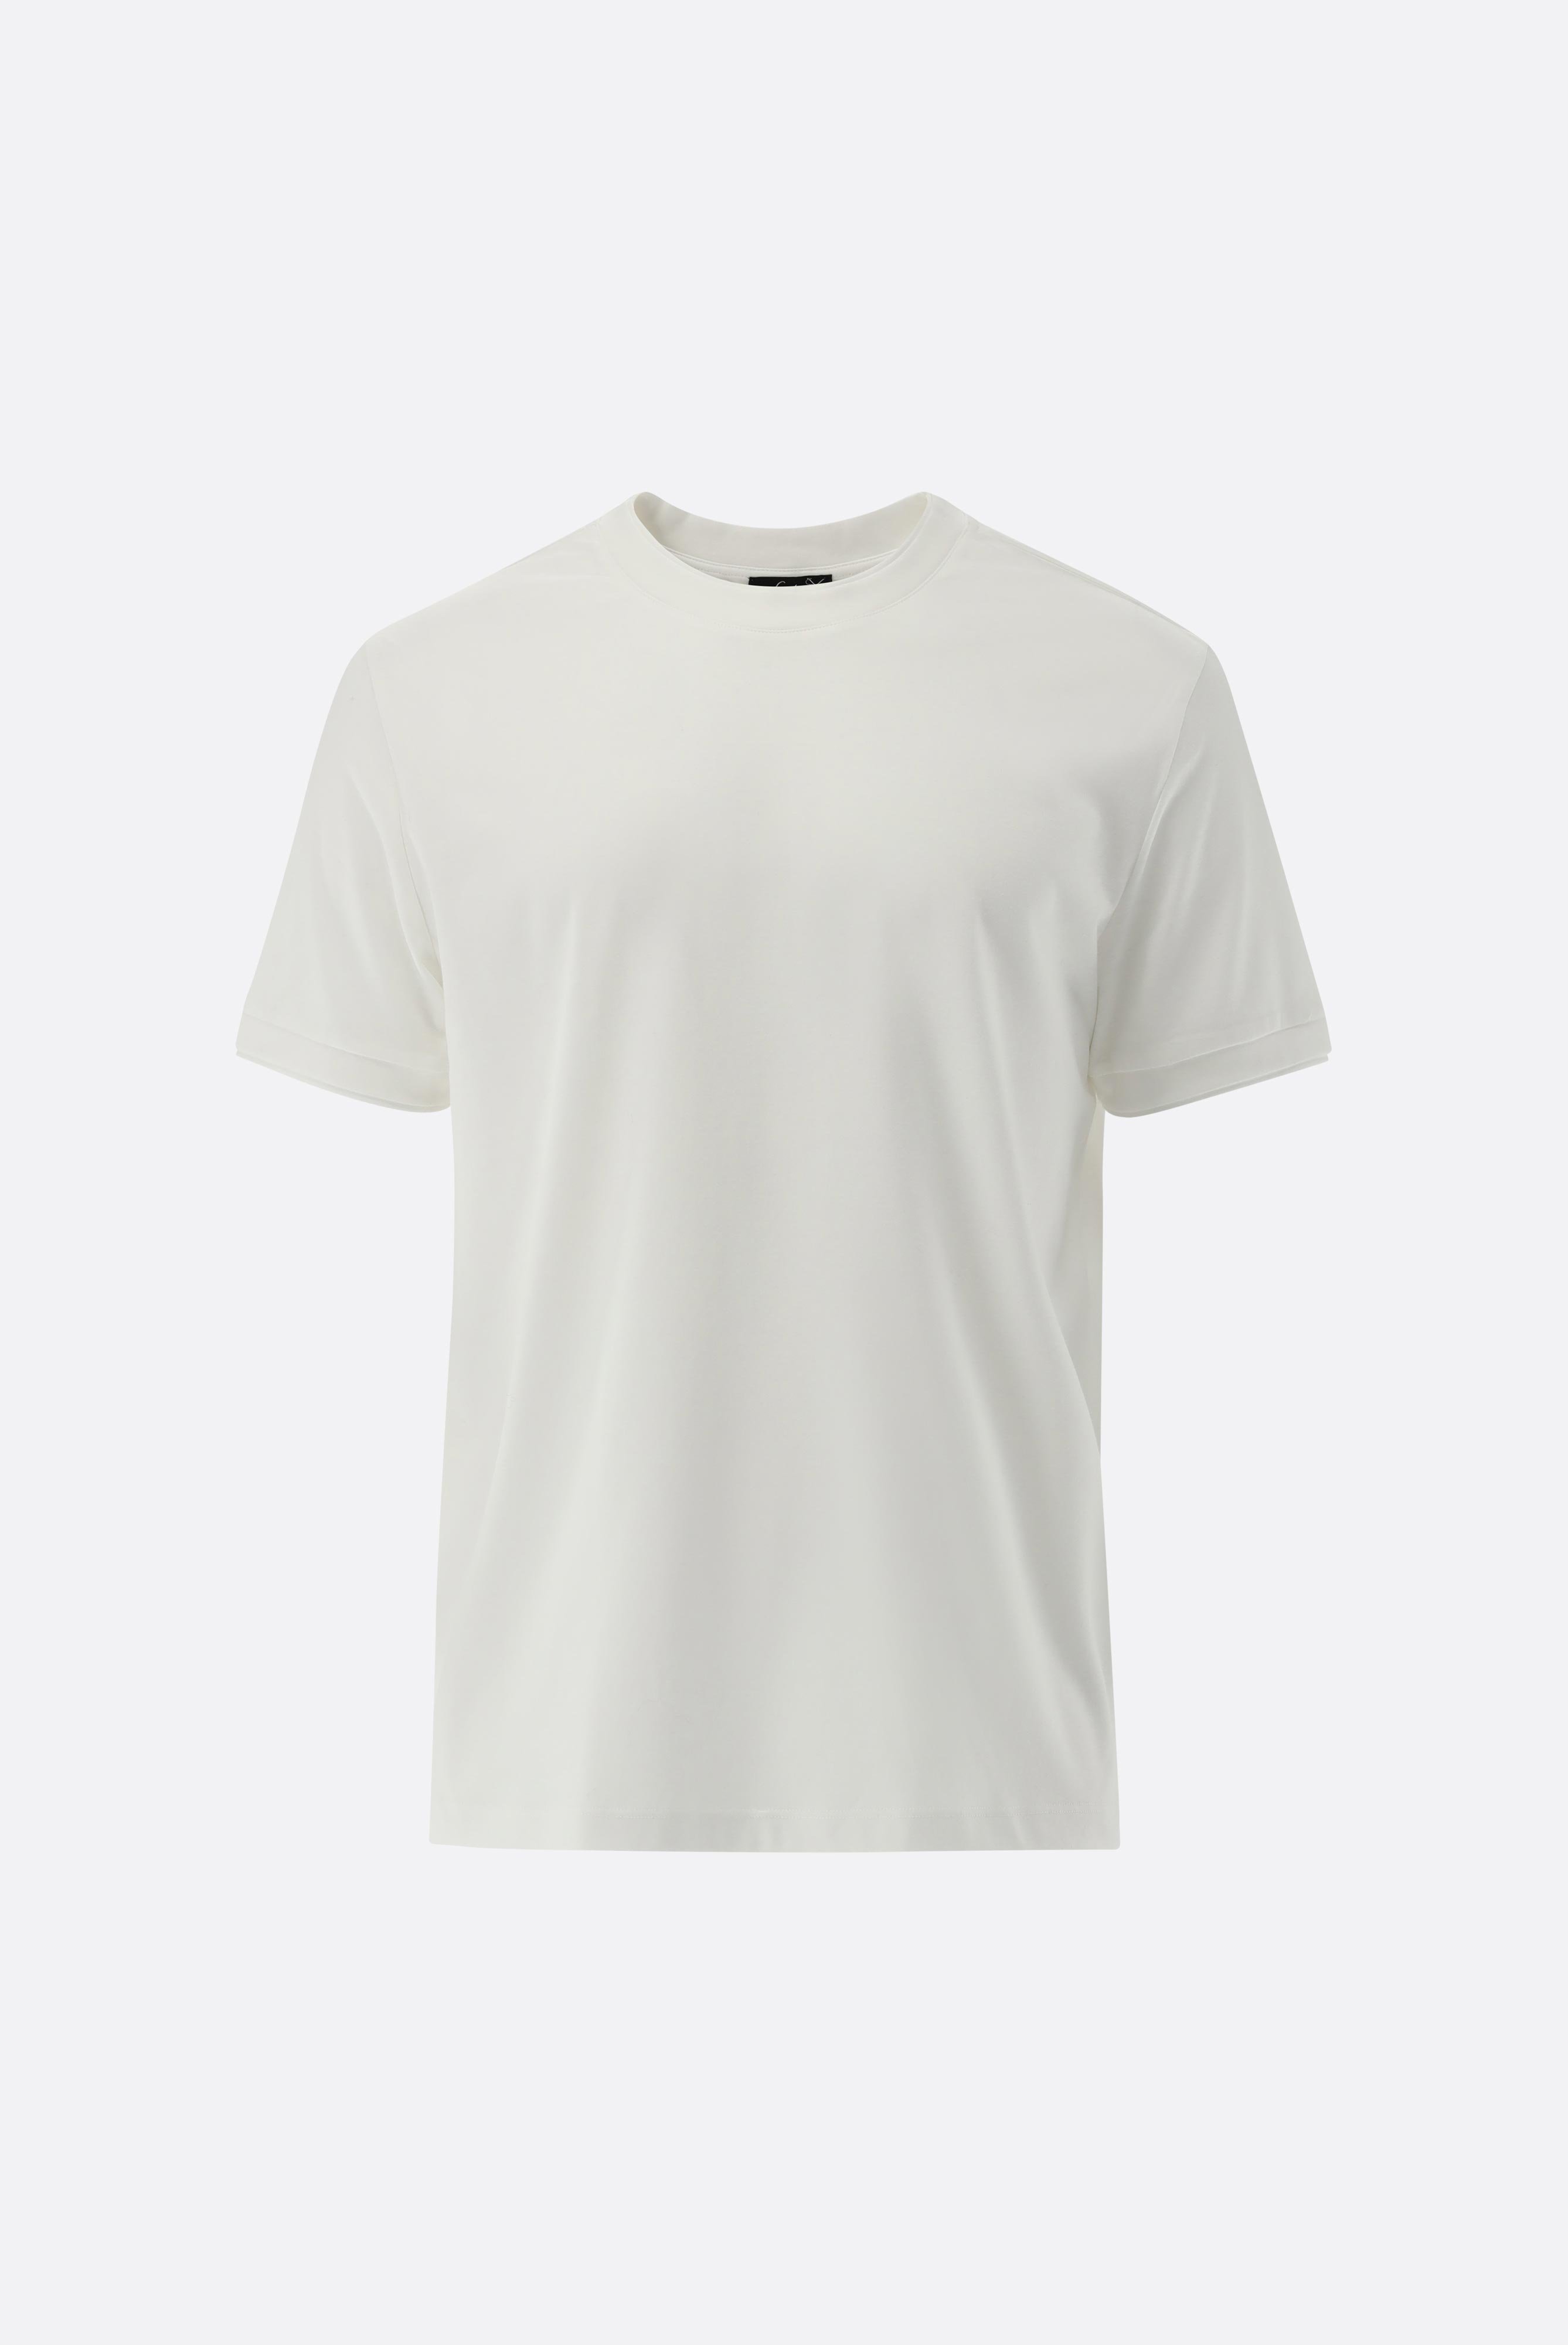 T-Shirts+T-Shirt mit Paspel Details+20.1673.U2.180053.000.S